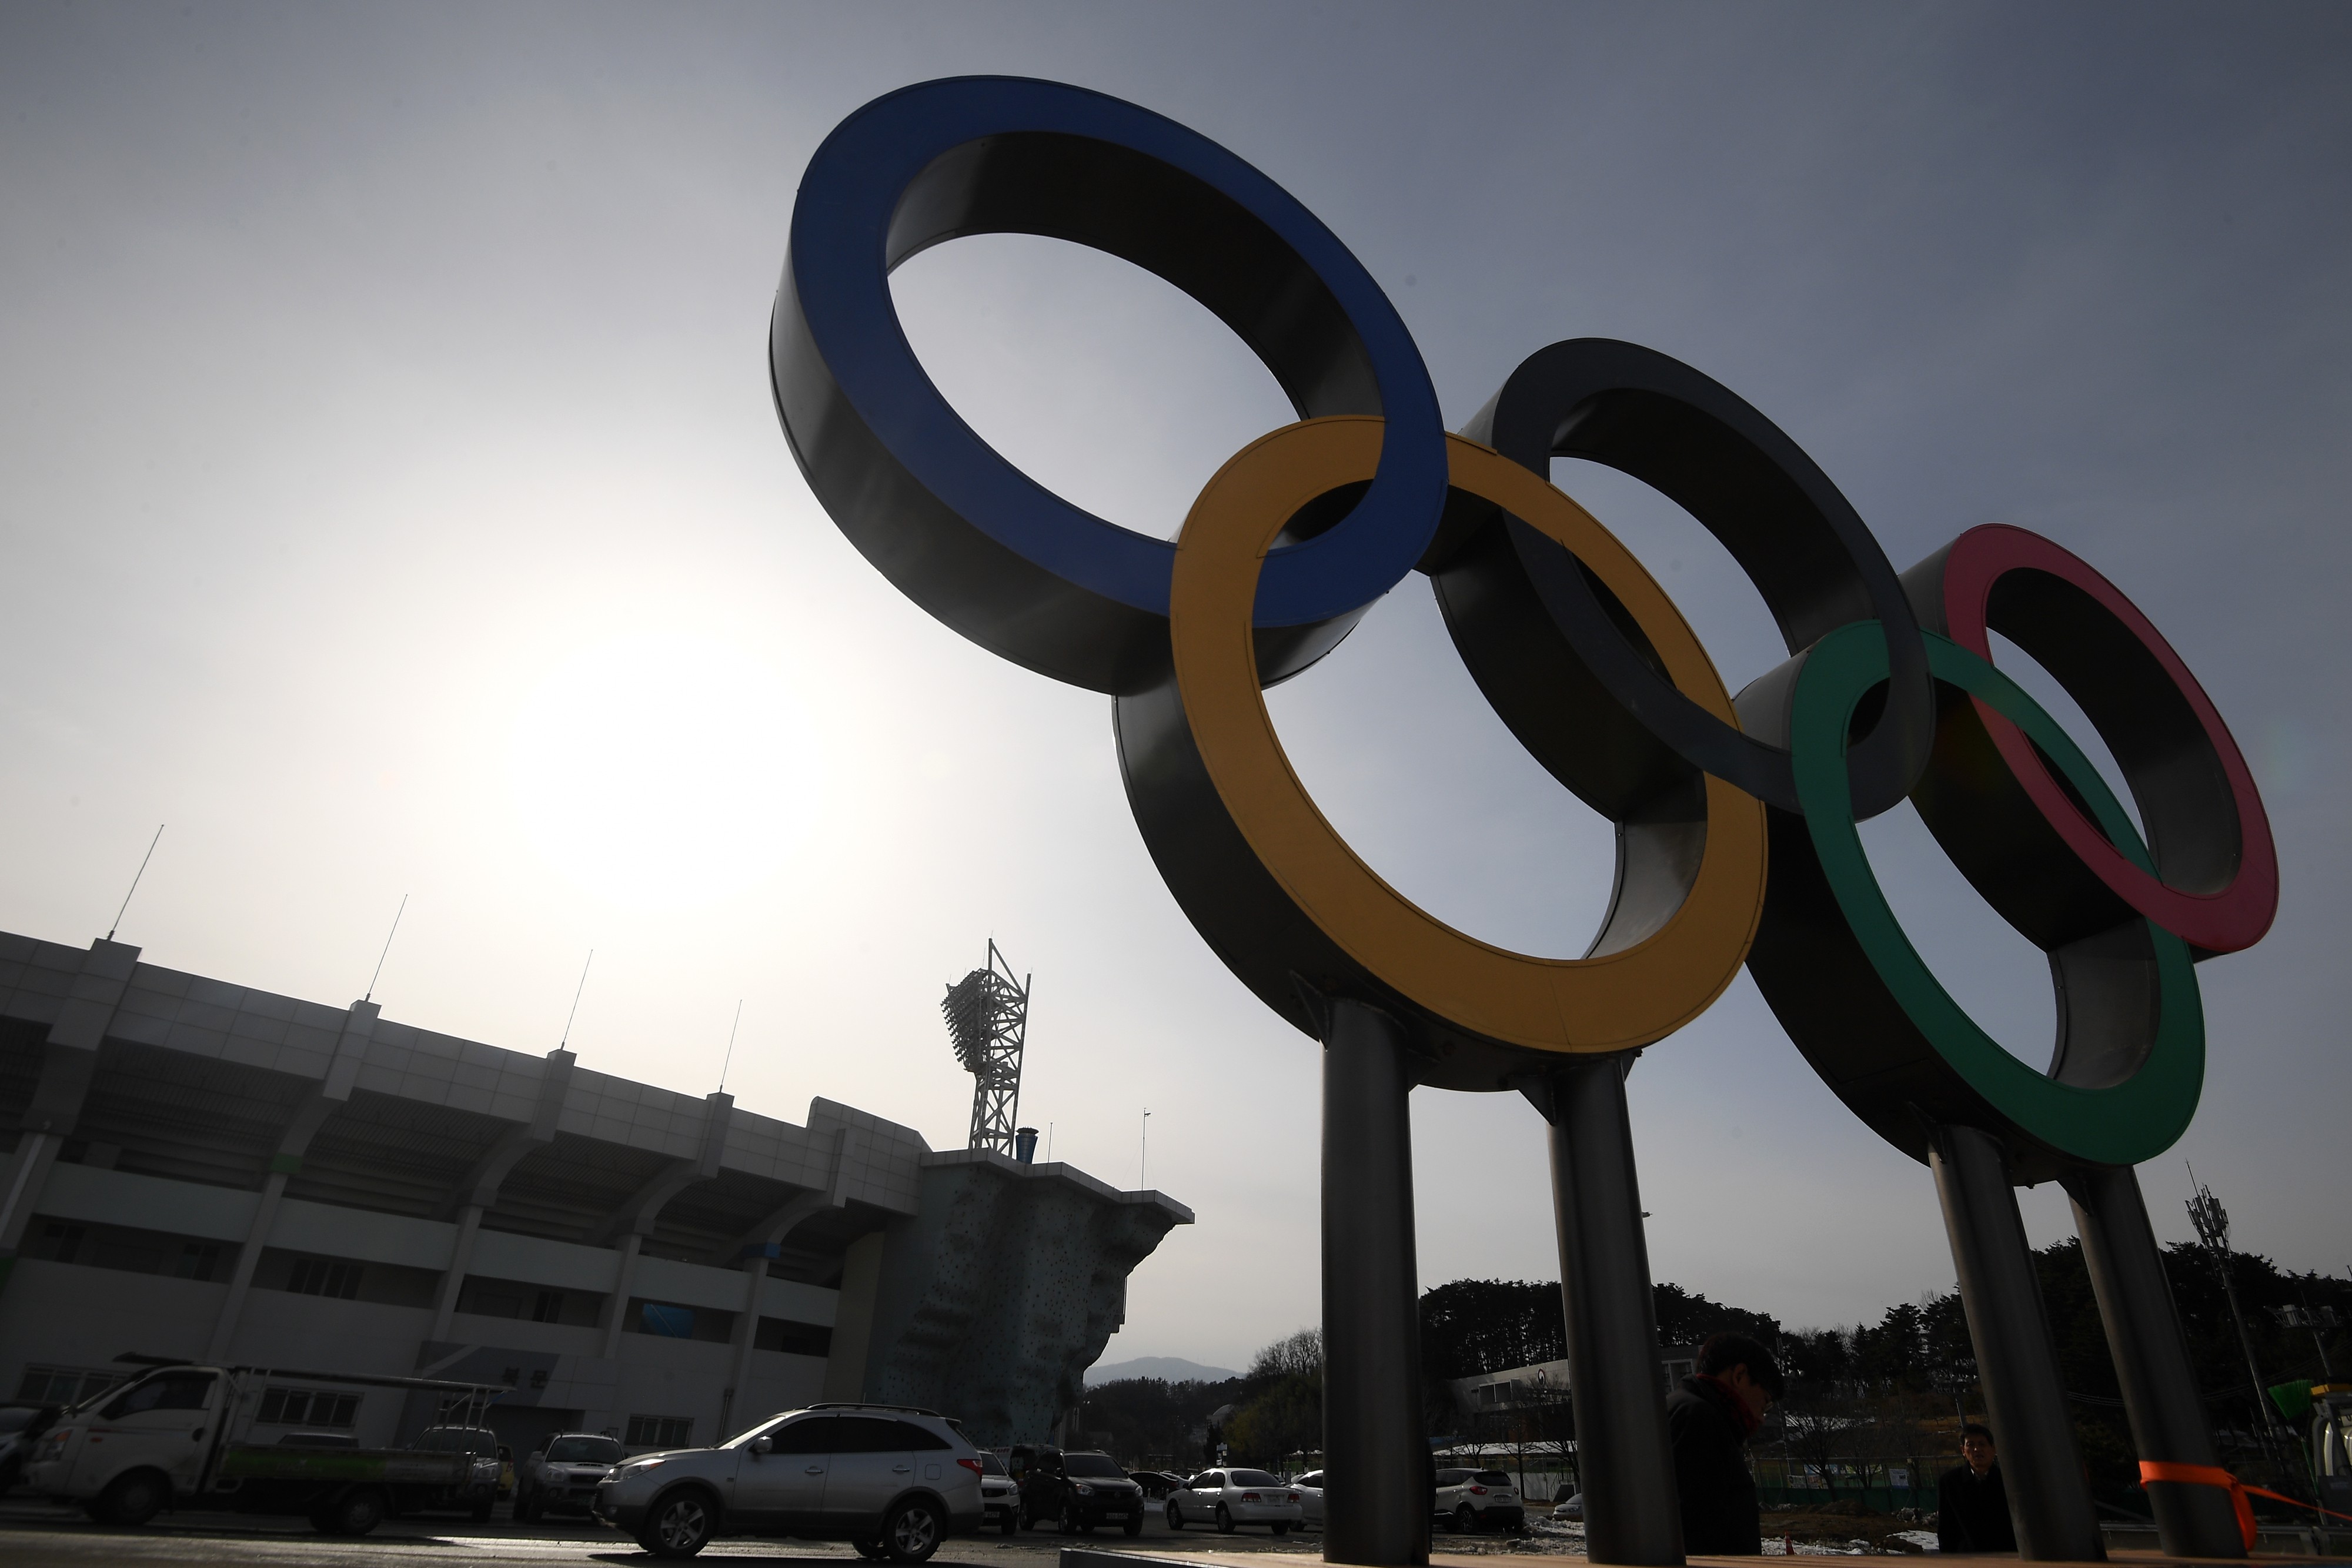 Олимпийские кольца в Олимпийском парке в Пхенчхане.&nbsp;
Фото:&nbsp;&nbsp;&copy;&nbsp;РИА Новости/Рамиль Ситдиков 